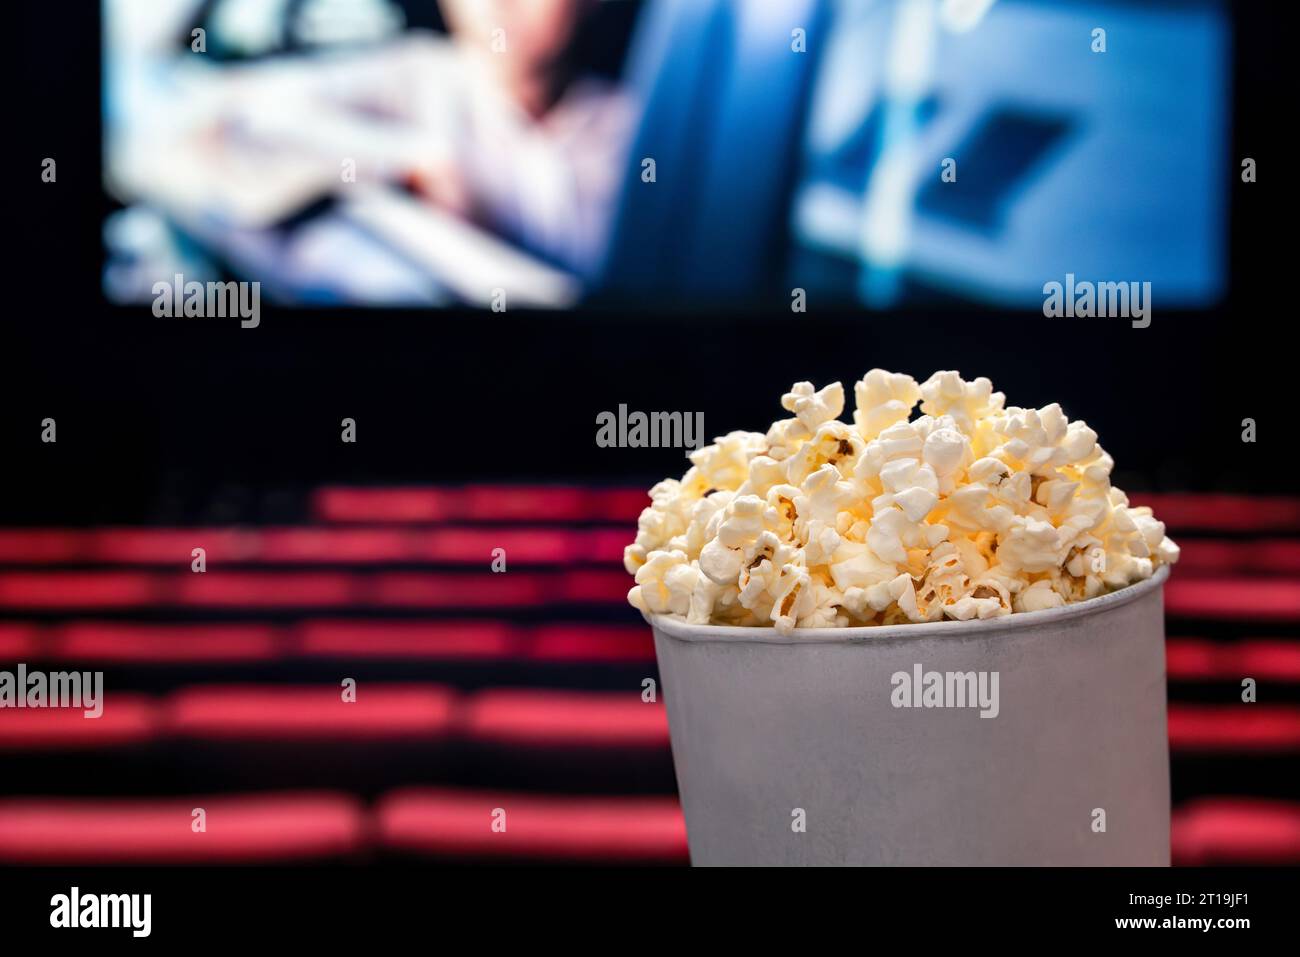 Filme und Popcorn. Popcorn im Kino. Familienfilmnächtekonzept. Action oder romantische Comedy-Unterhaltung auf dem Bildschirm. Dunkles Theater mit roten Sitzen. Stockfoto